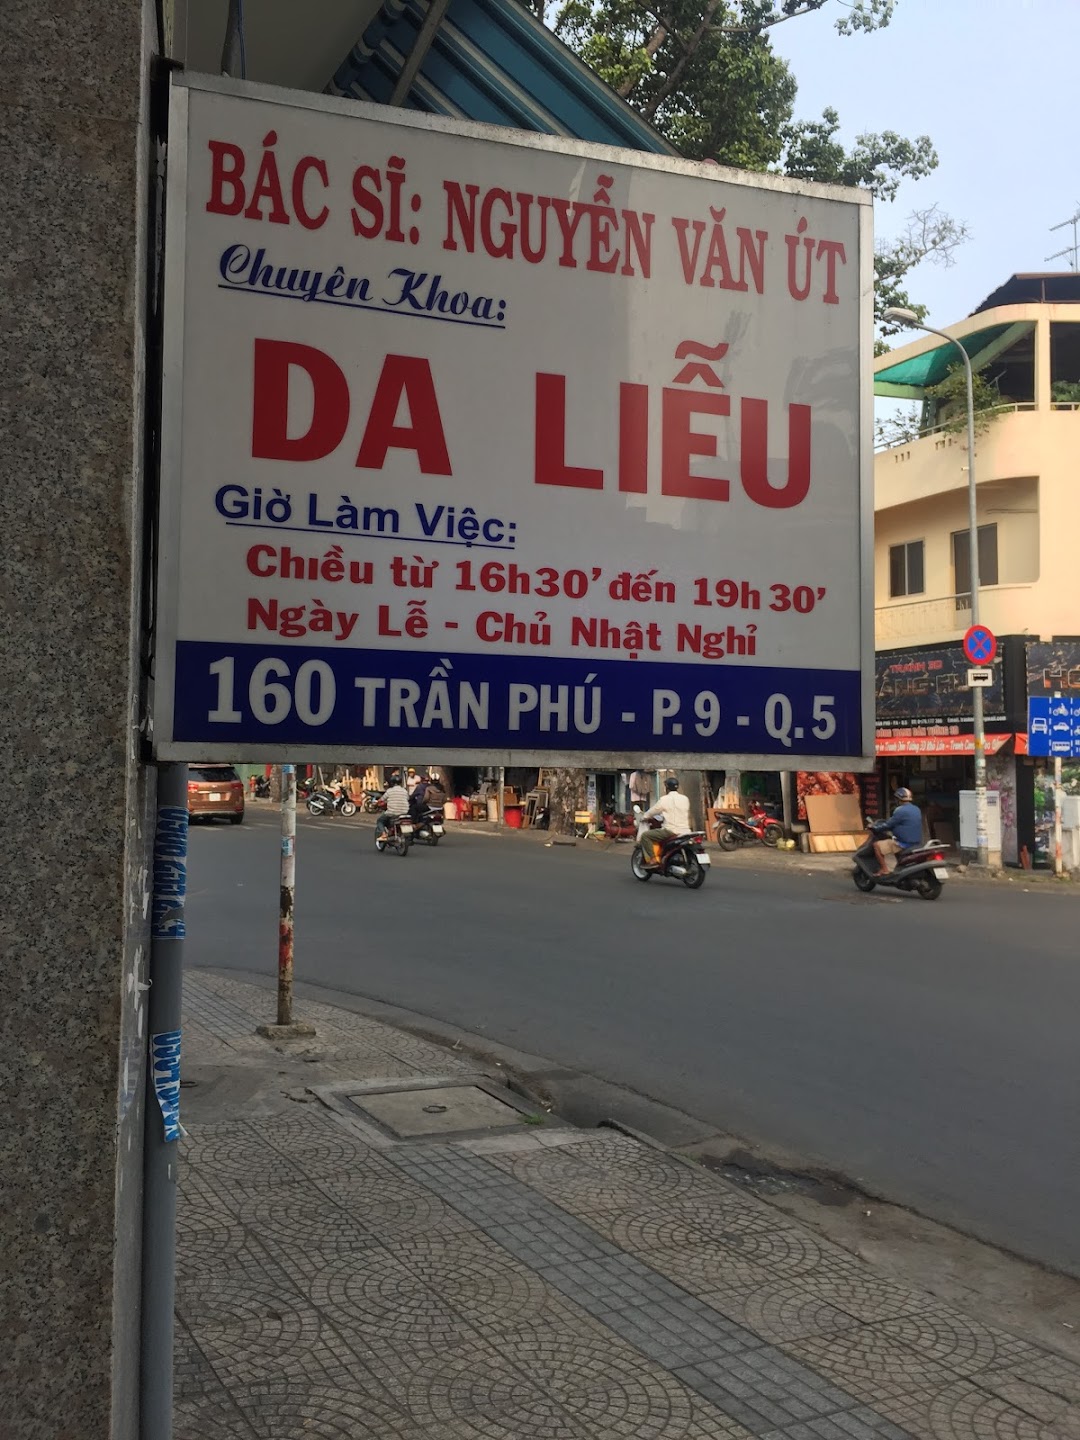 Phòng Khám Bác Sĩ Nguyễn Văn Út Da liễu.